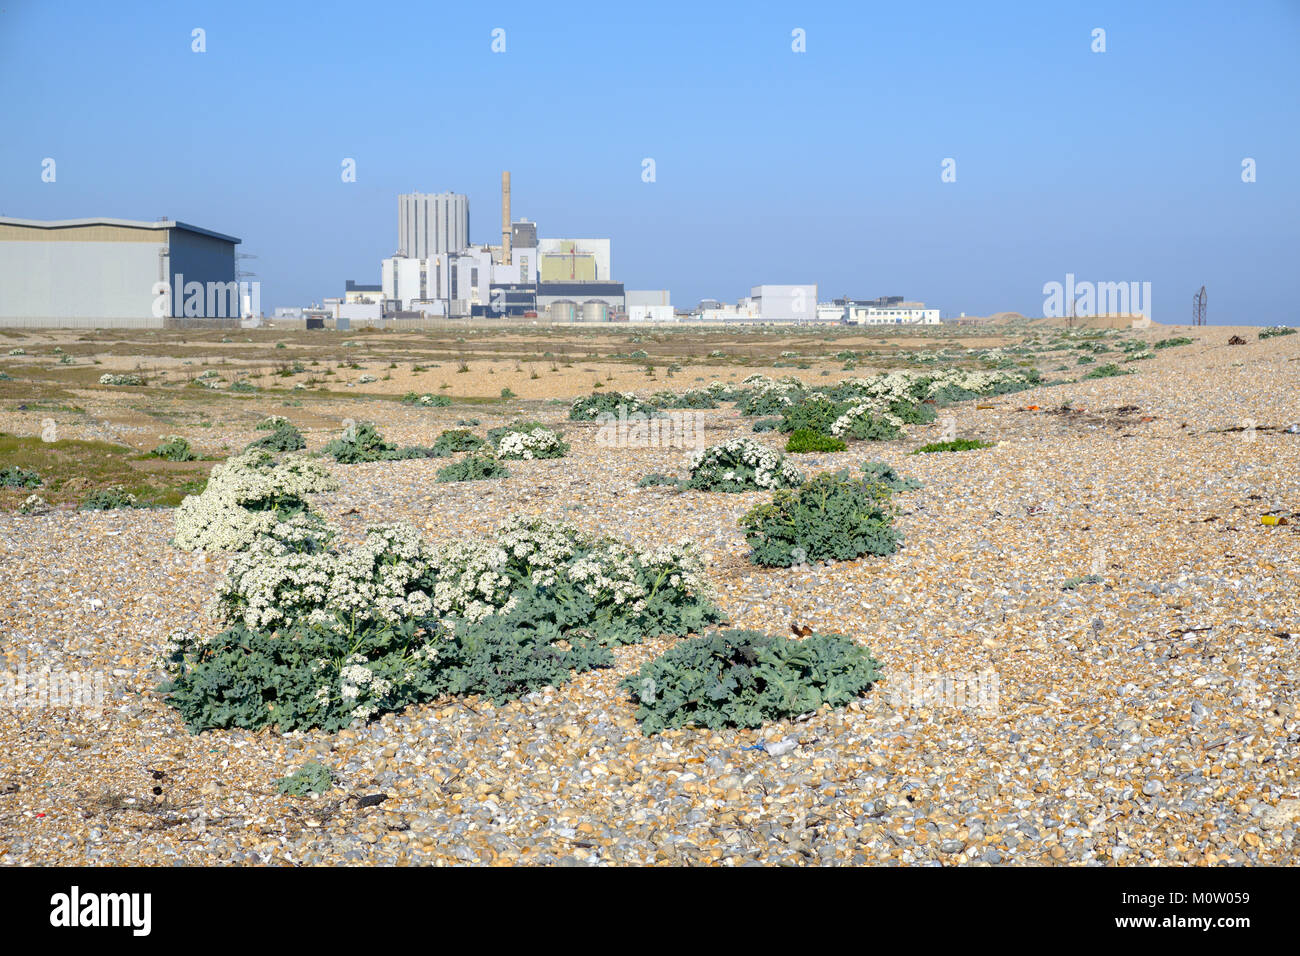 Cavolo riccio di mare (Crambe Maritima) cresce su una spiaggia di ciottoli, Dungeness vicino a Dungeness centrale nucleare, Kent, Inghilterra Foto Stock